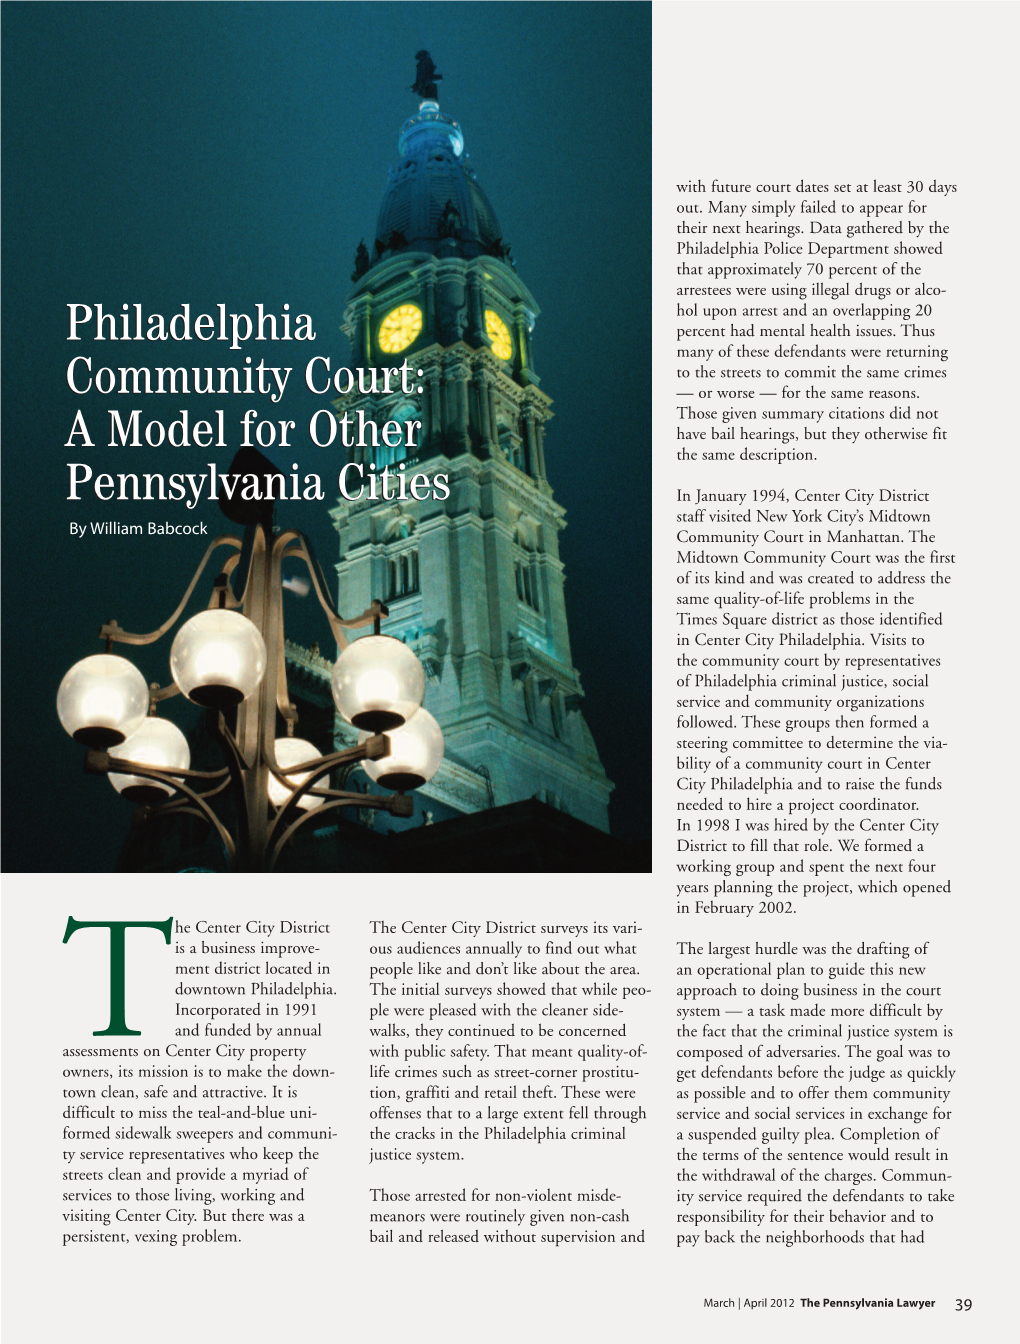 Philadelphia Community Court